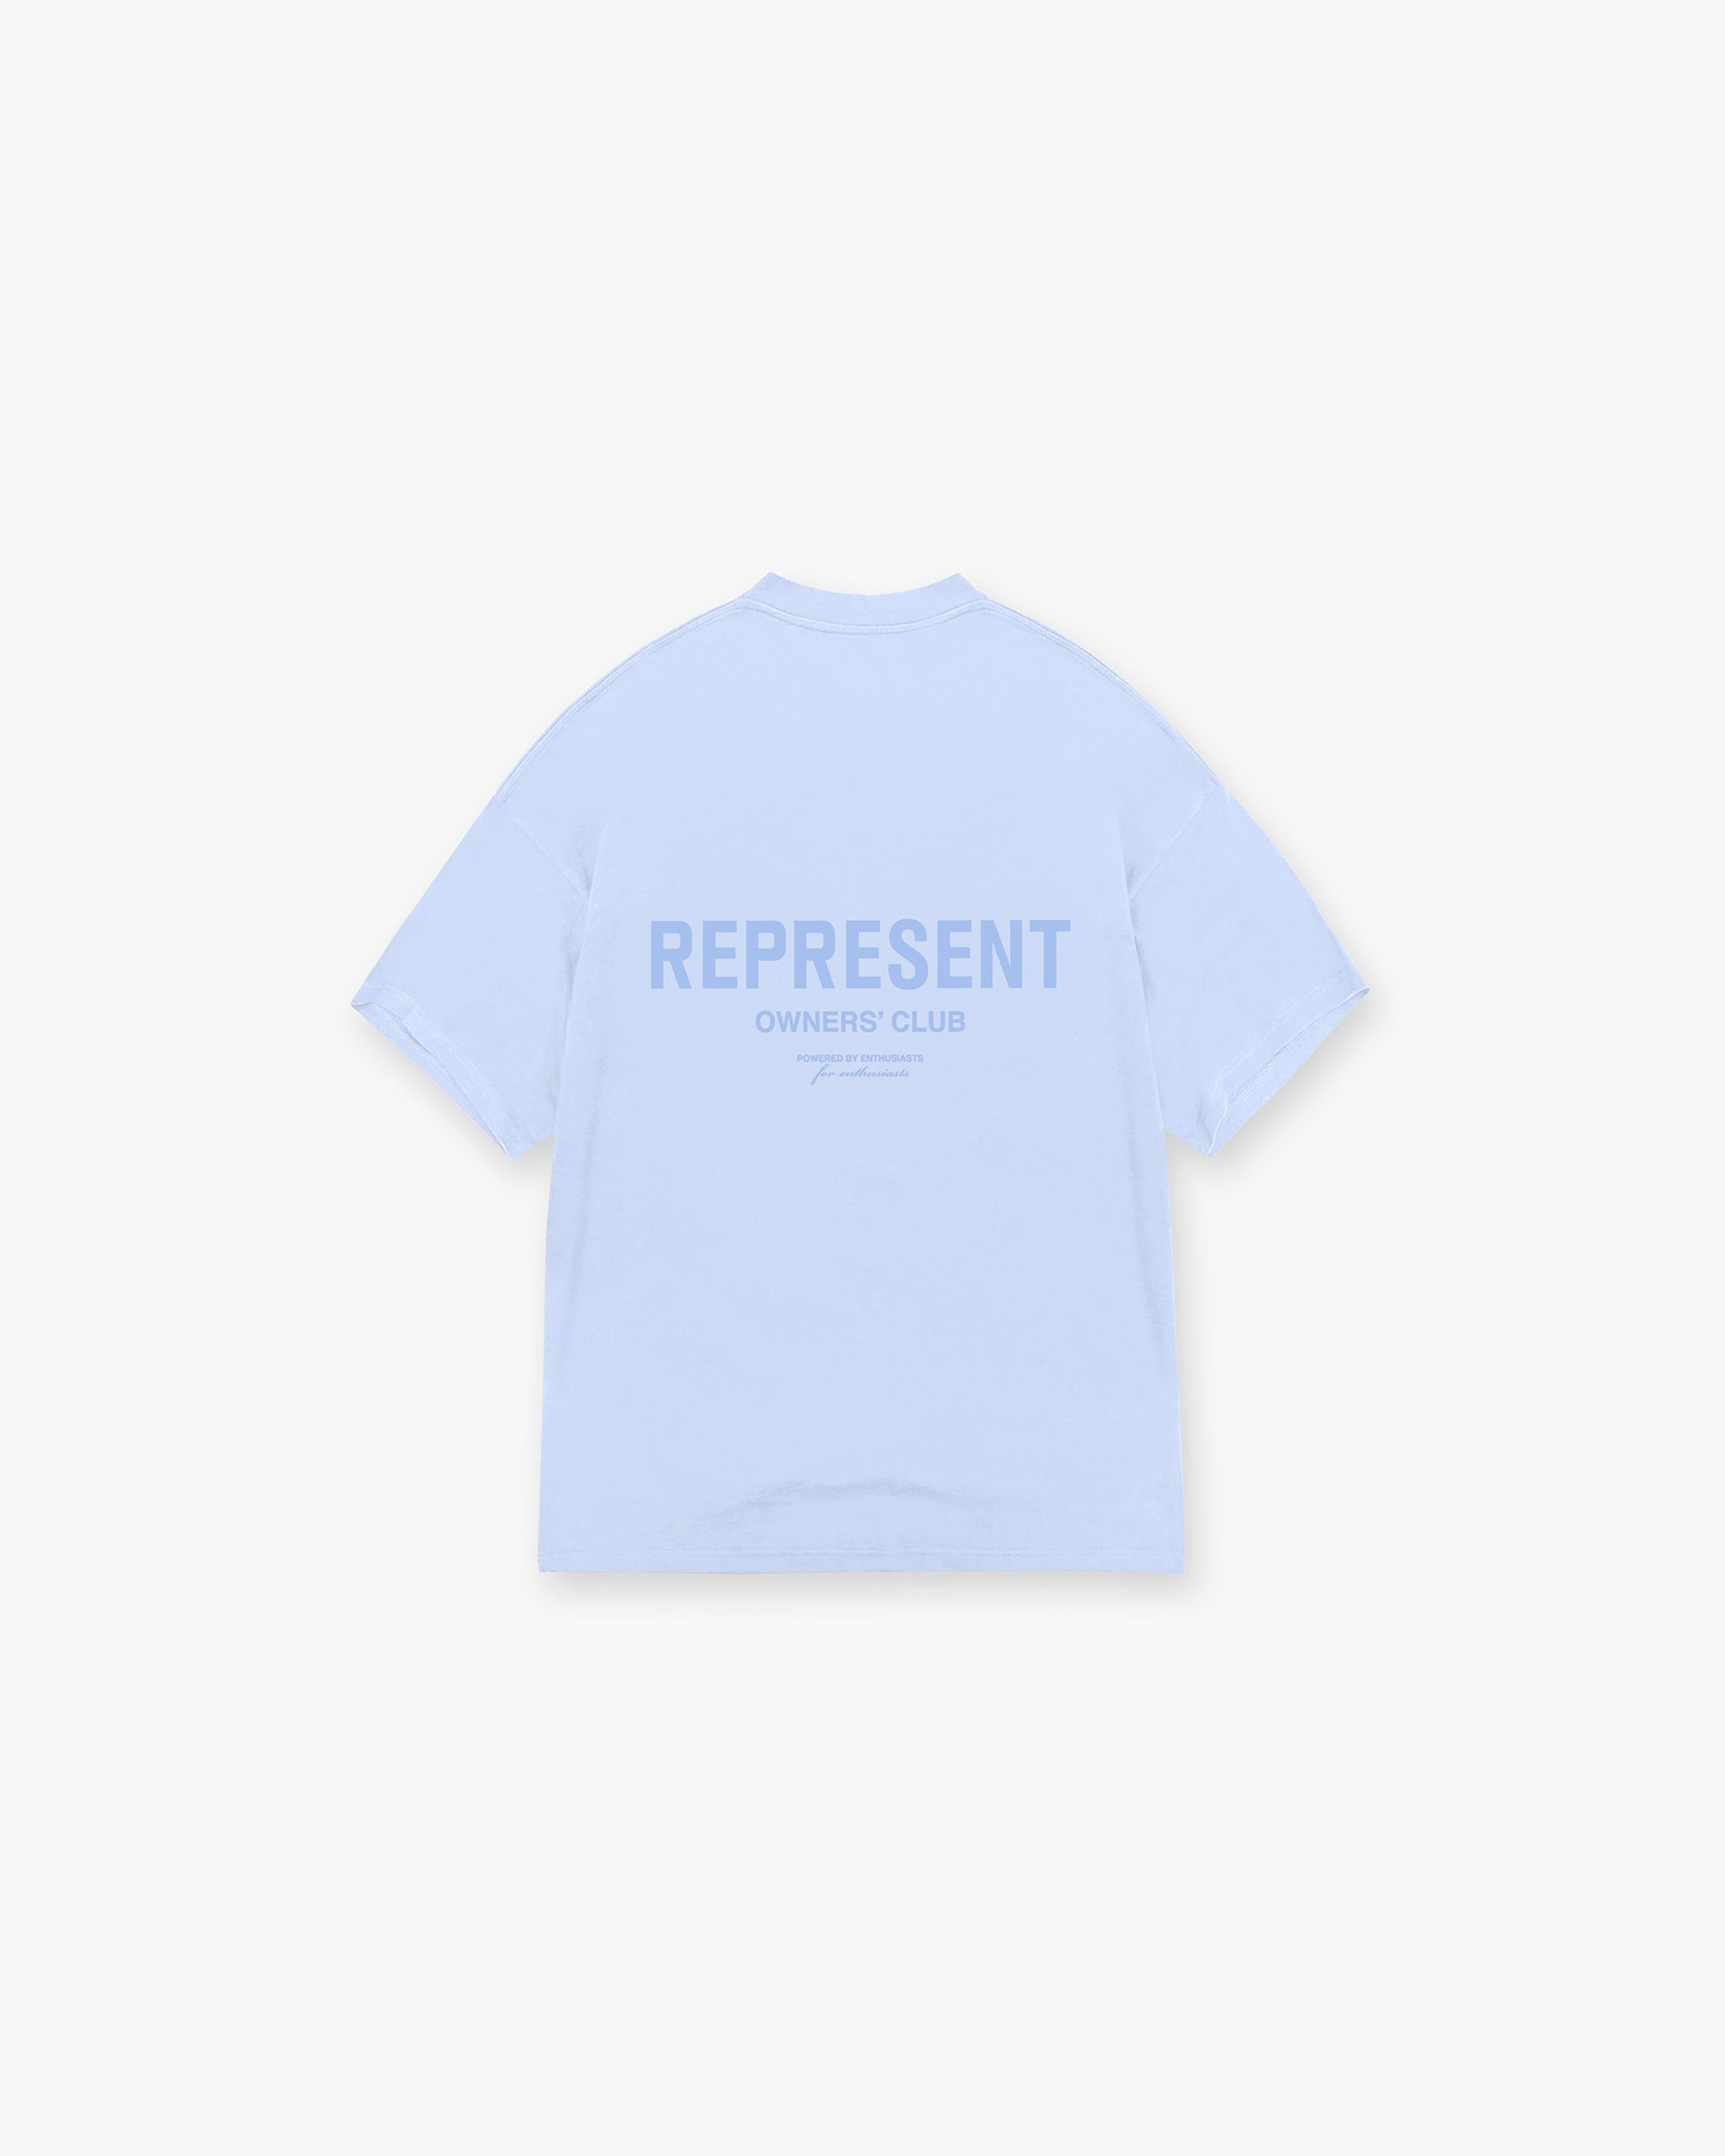 Represent Owners Club T-Shirt | Vista Blue | REPRESENT CLO